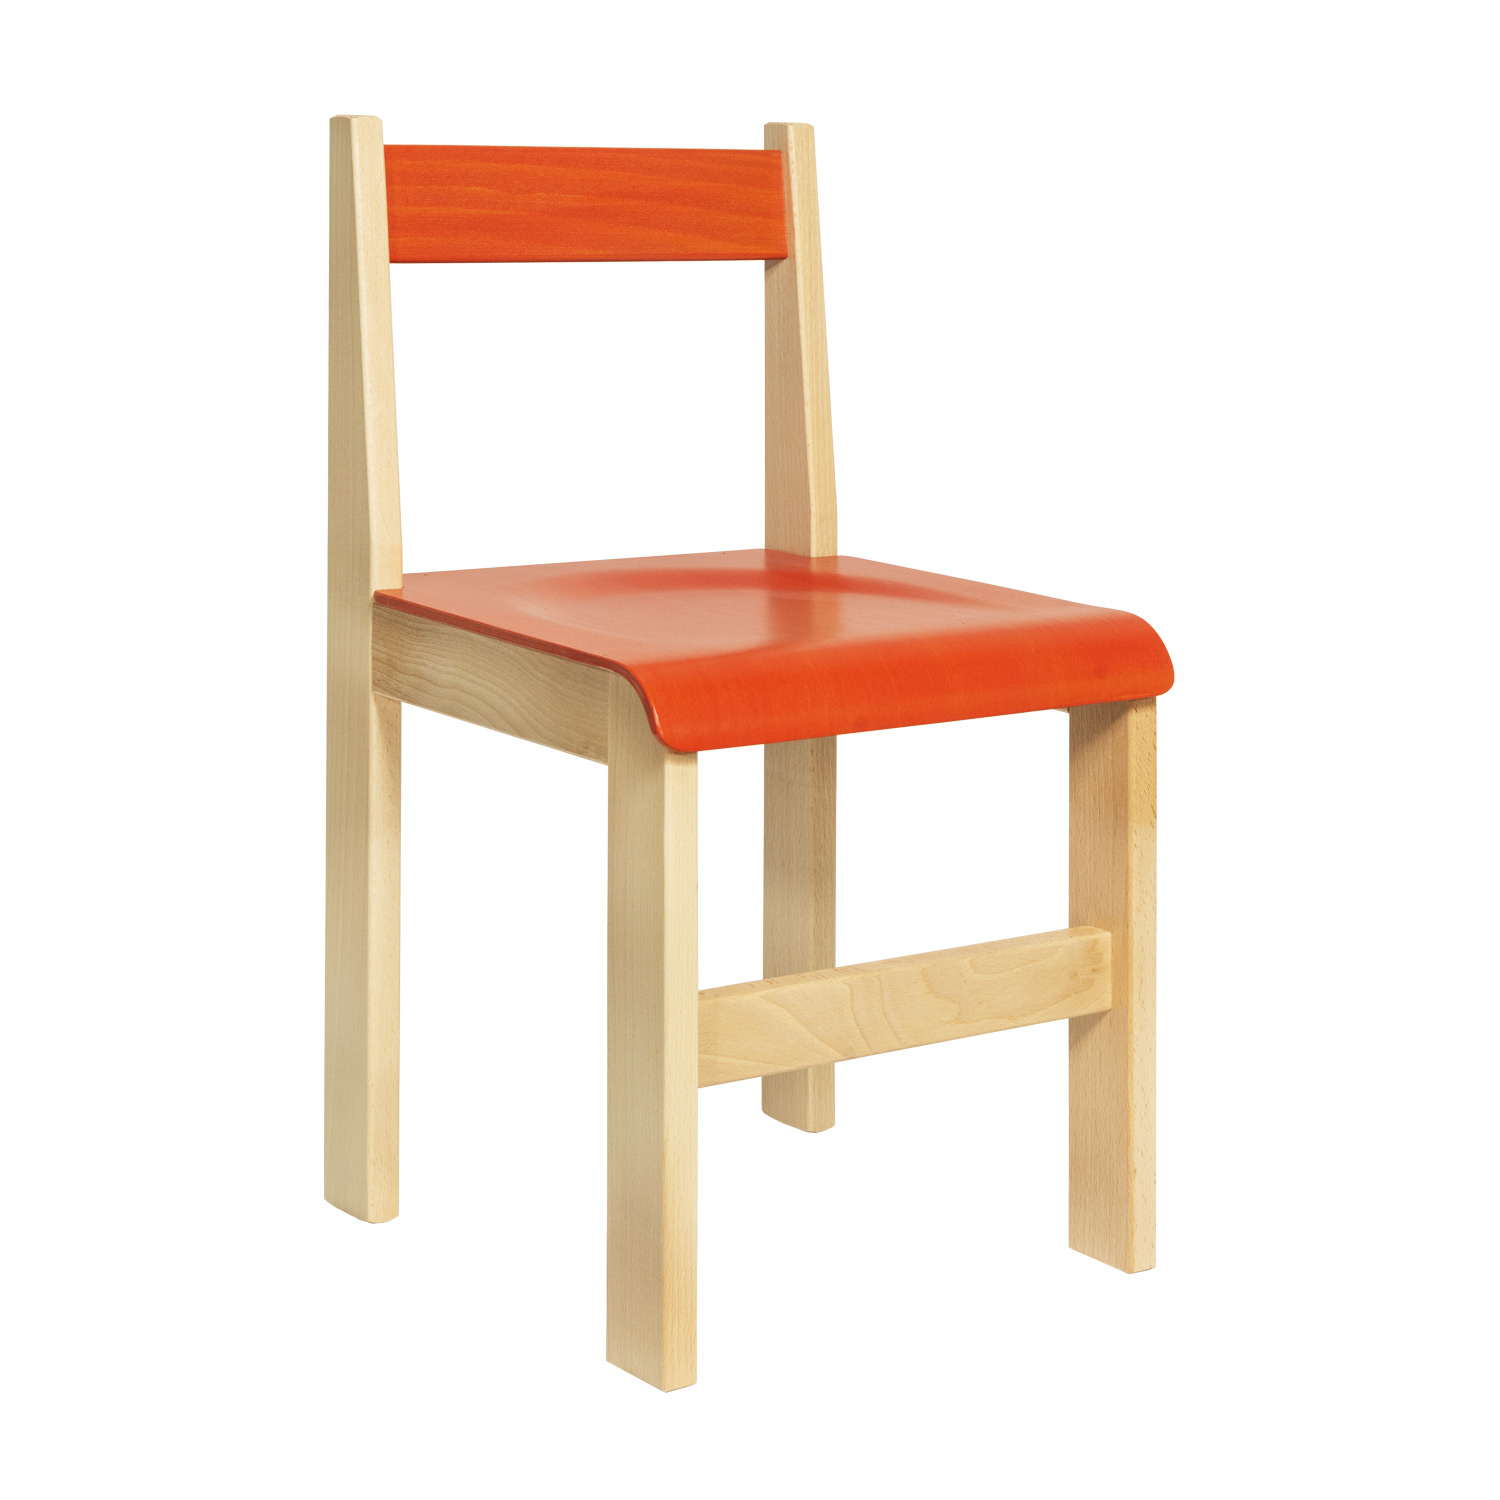 Detská stolička, Model 05, z bukového masívu, farebná